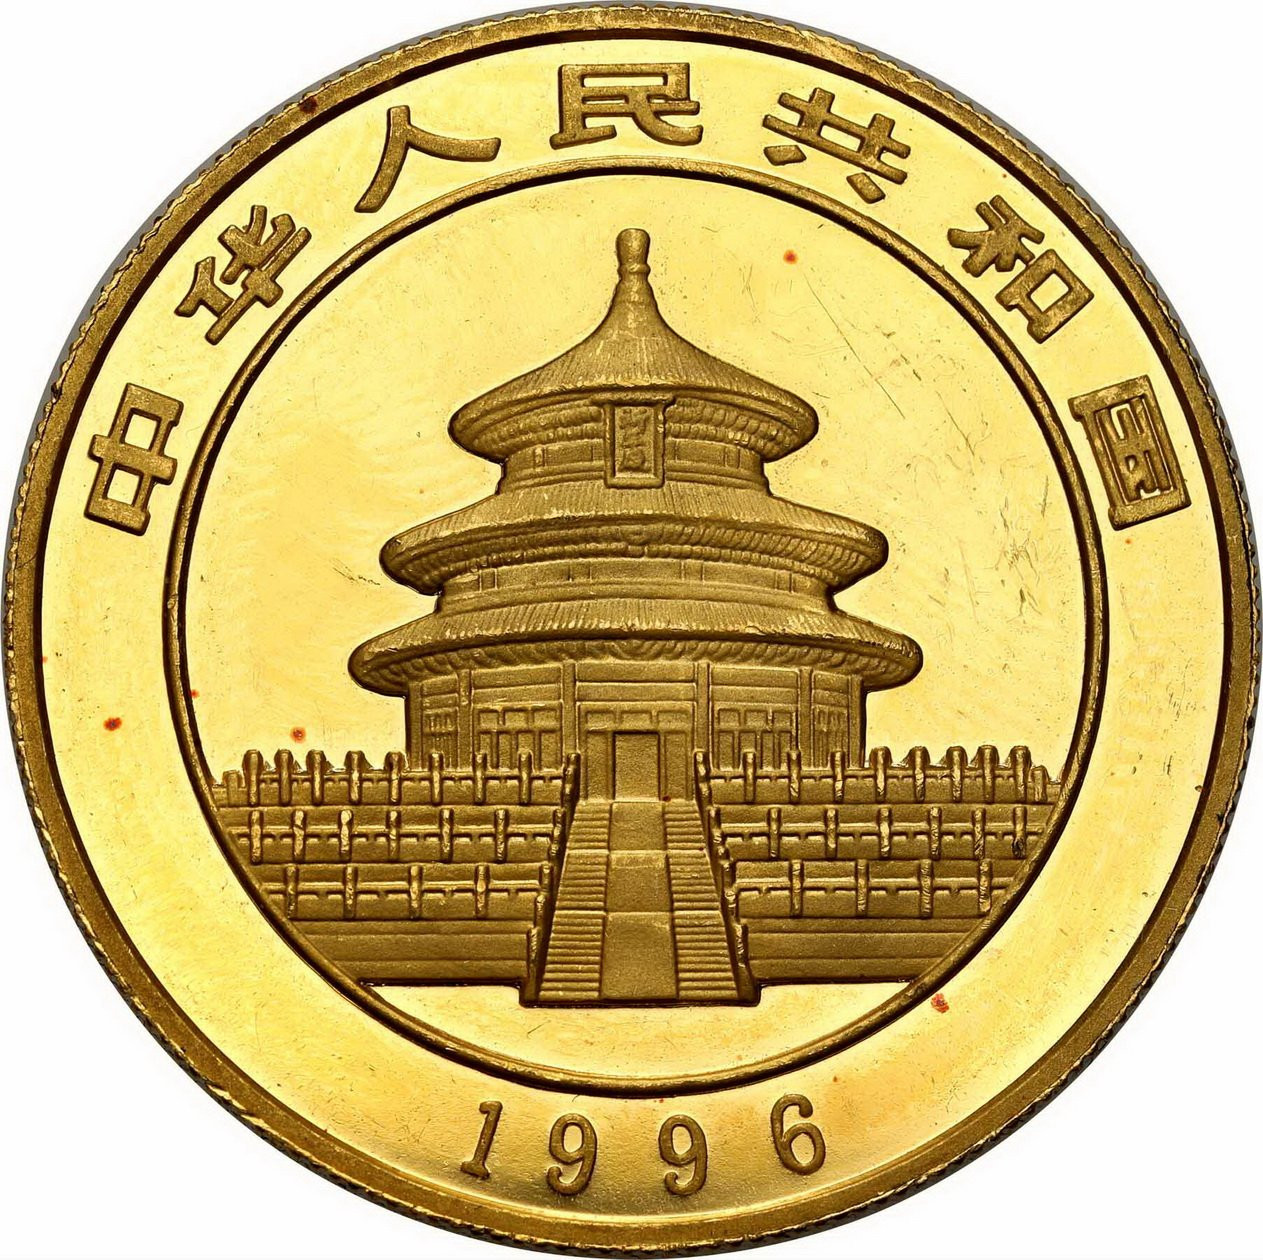 Chiny. 100 Yuan 1996 Panda - 1 uncja złota